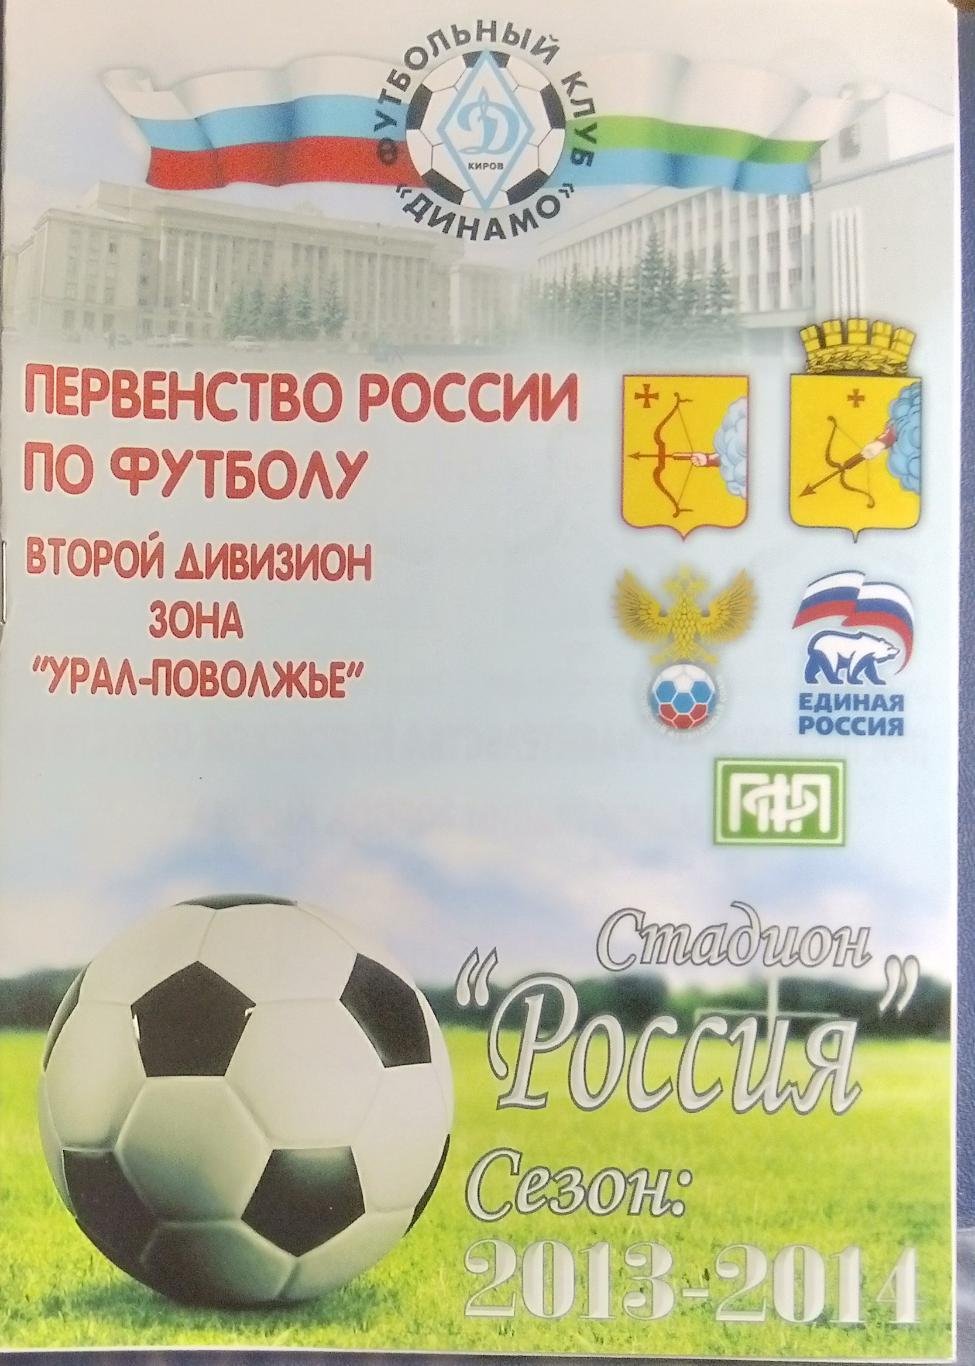 Динамо Киров - Сызрань-2003 - 2013/2014